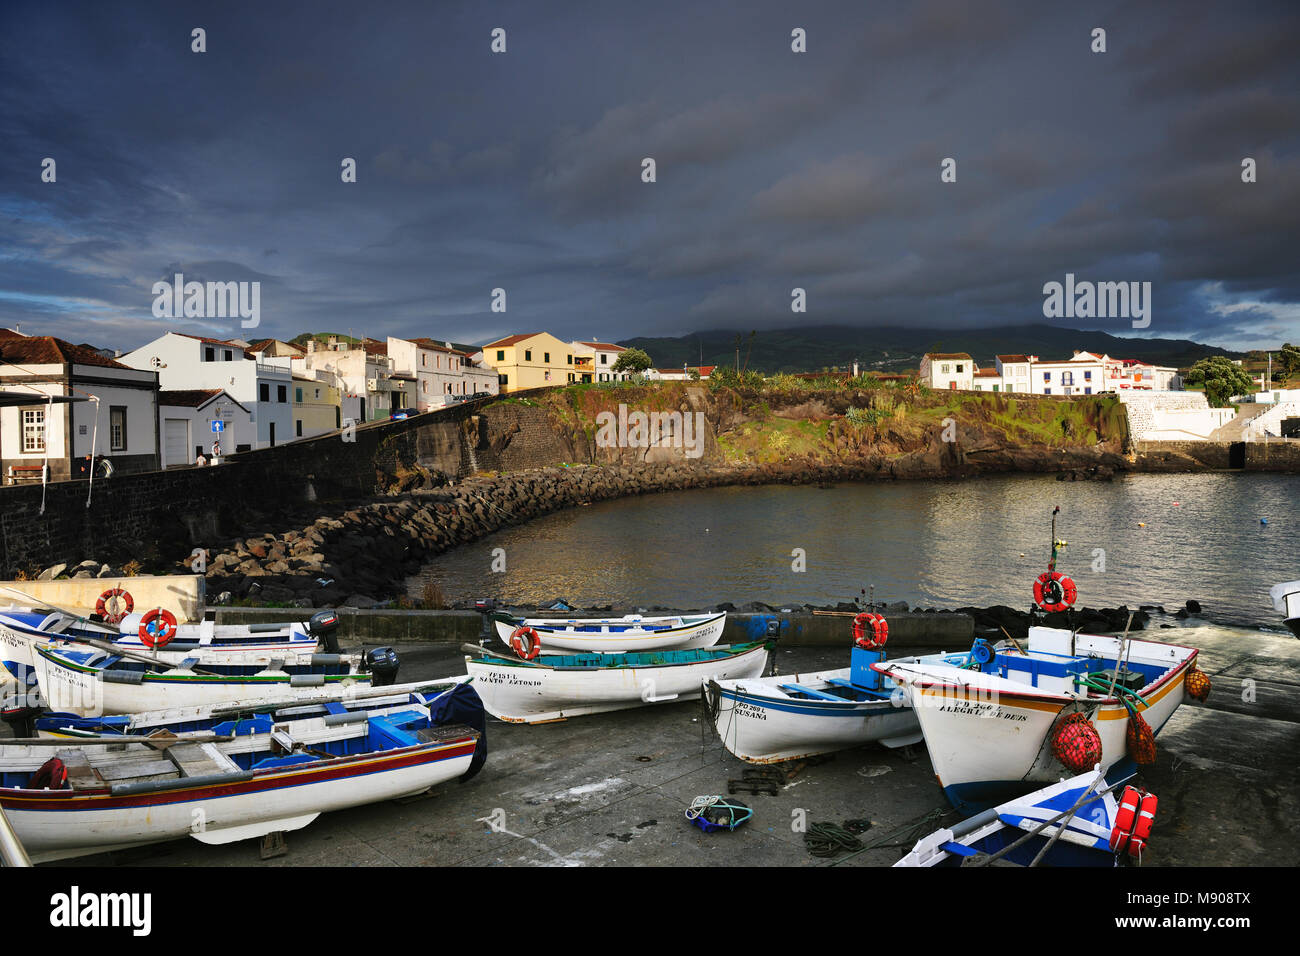 Les bateaux de pêche dans la région de Lagoa. São Miguel, Açores. Portugal Banque D'Images